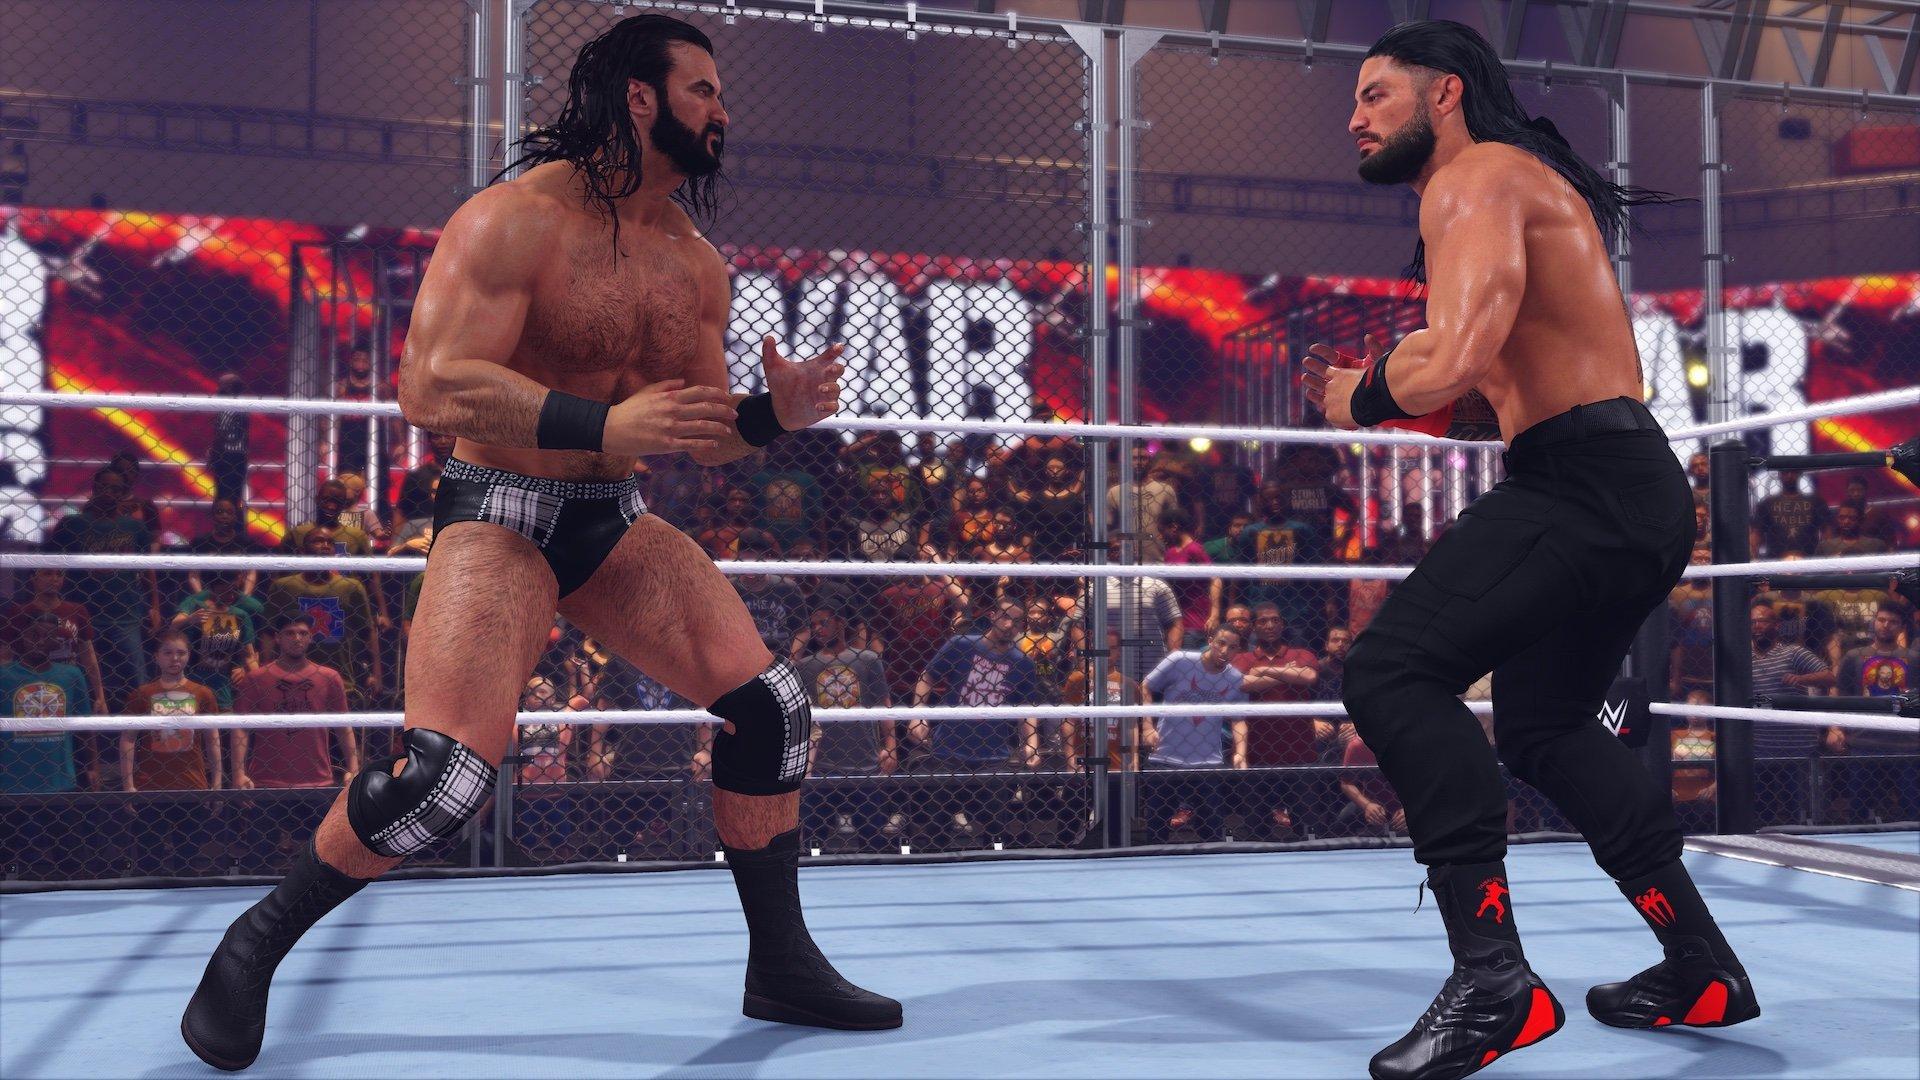 WWE 2K23 - Xbox One | Xbox One | GameStop